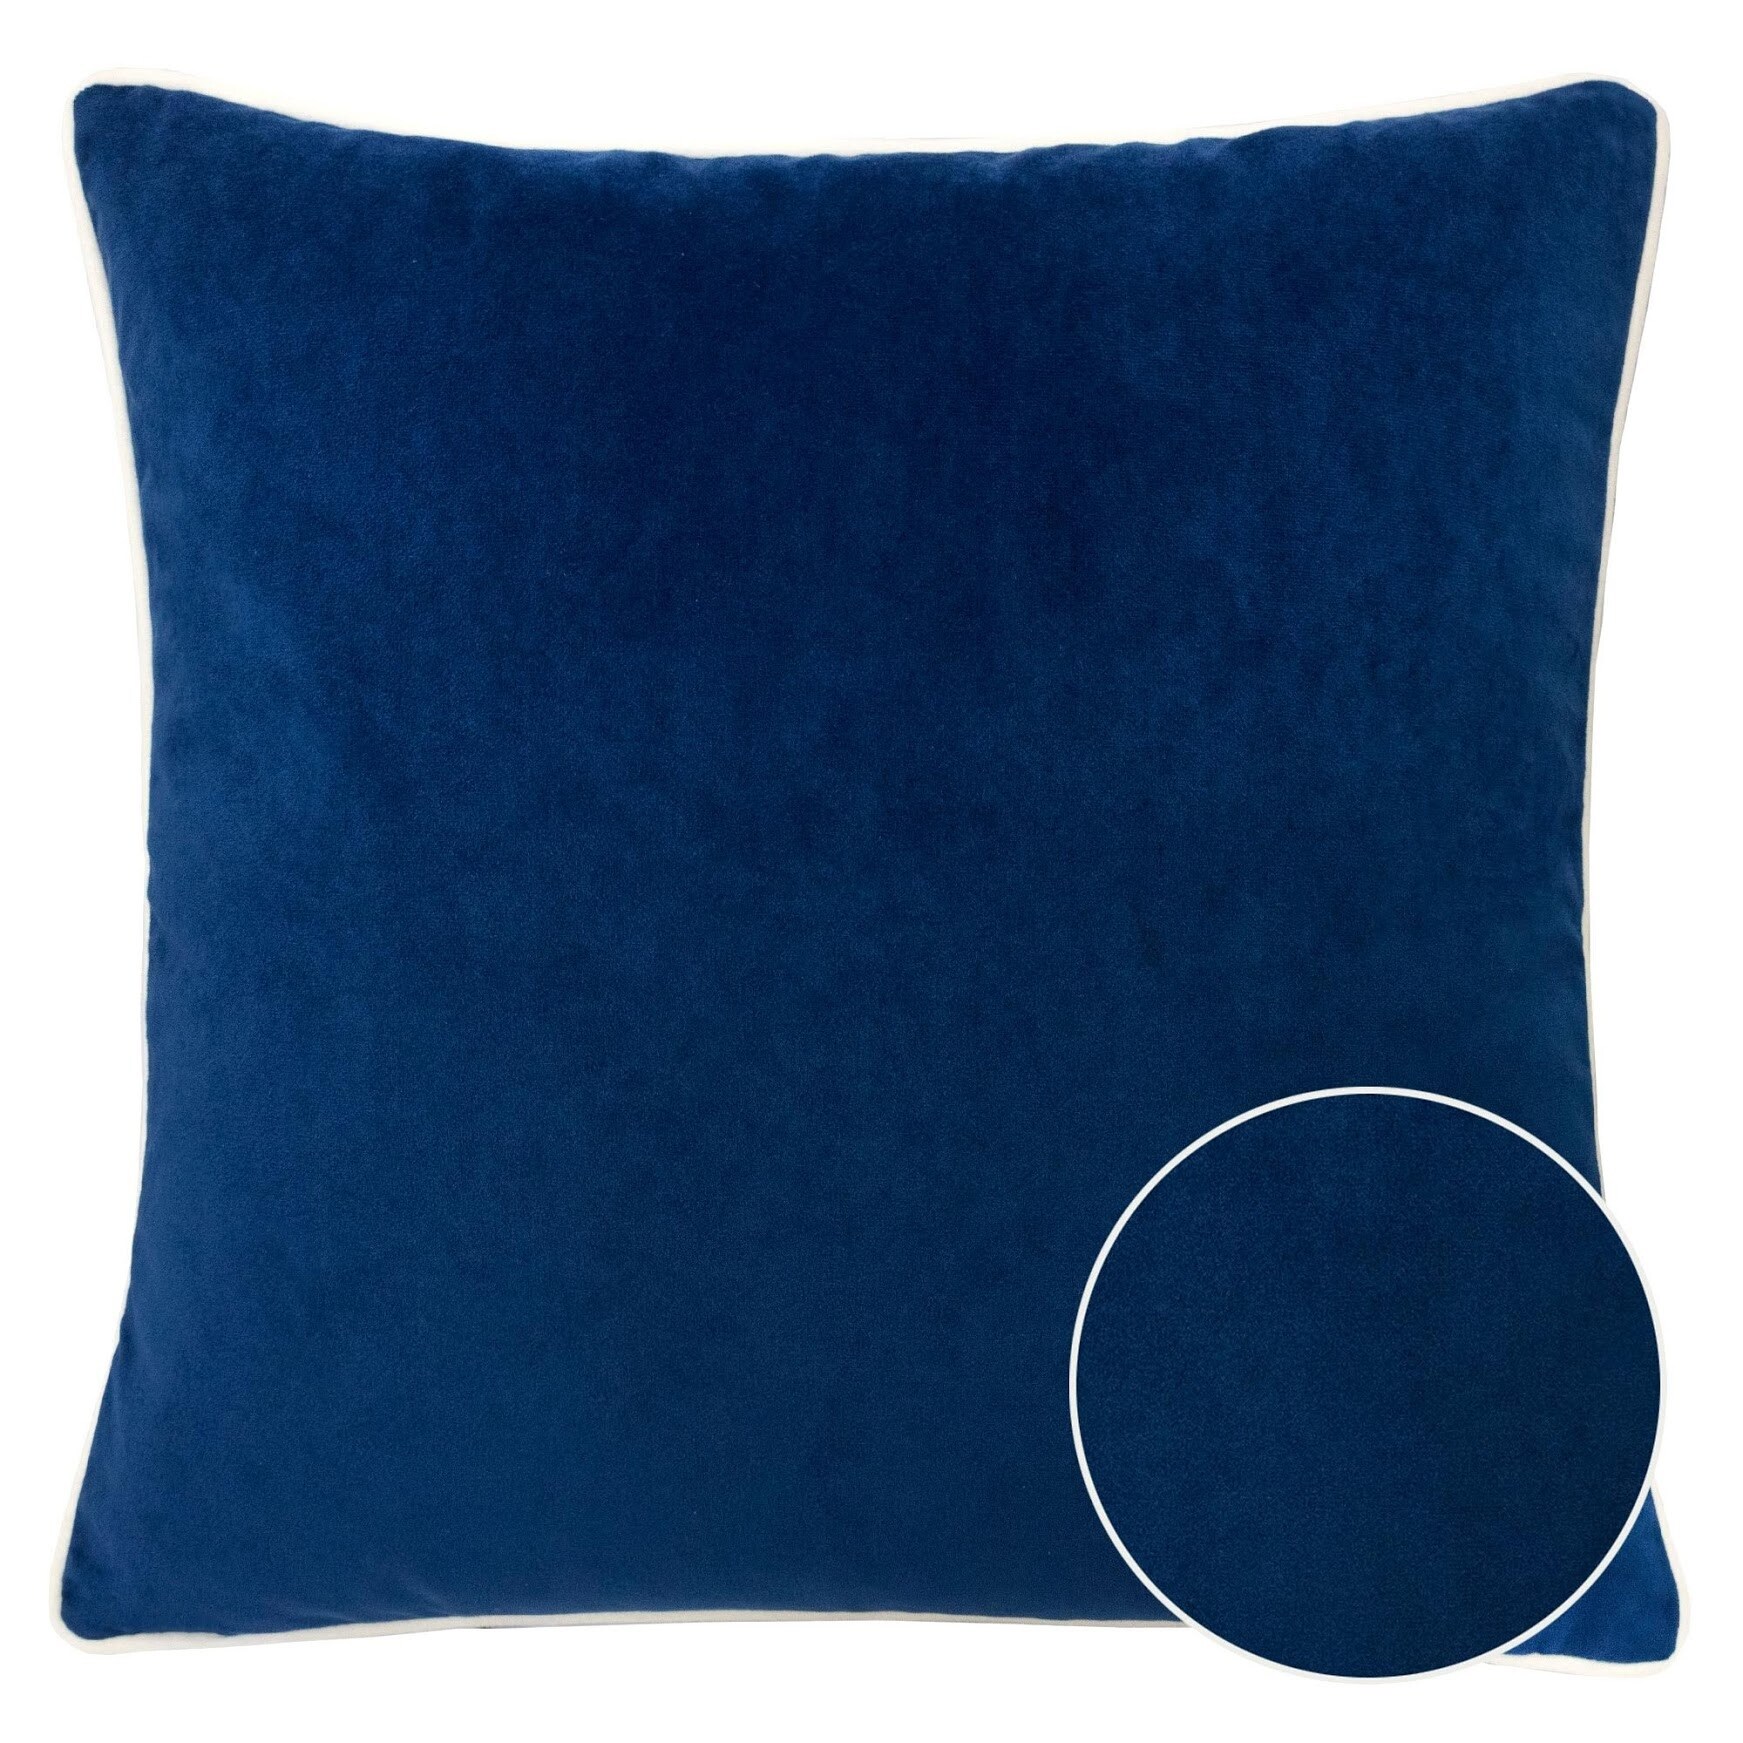 Homey Cozy Velvet Solid Throw Pillow Cover & Insert - Set of 2